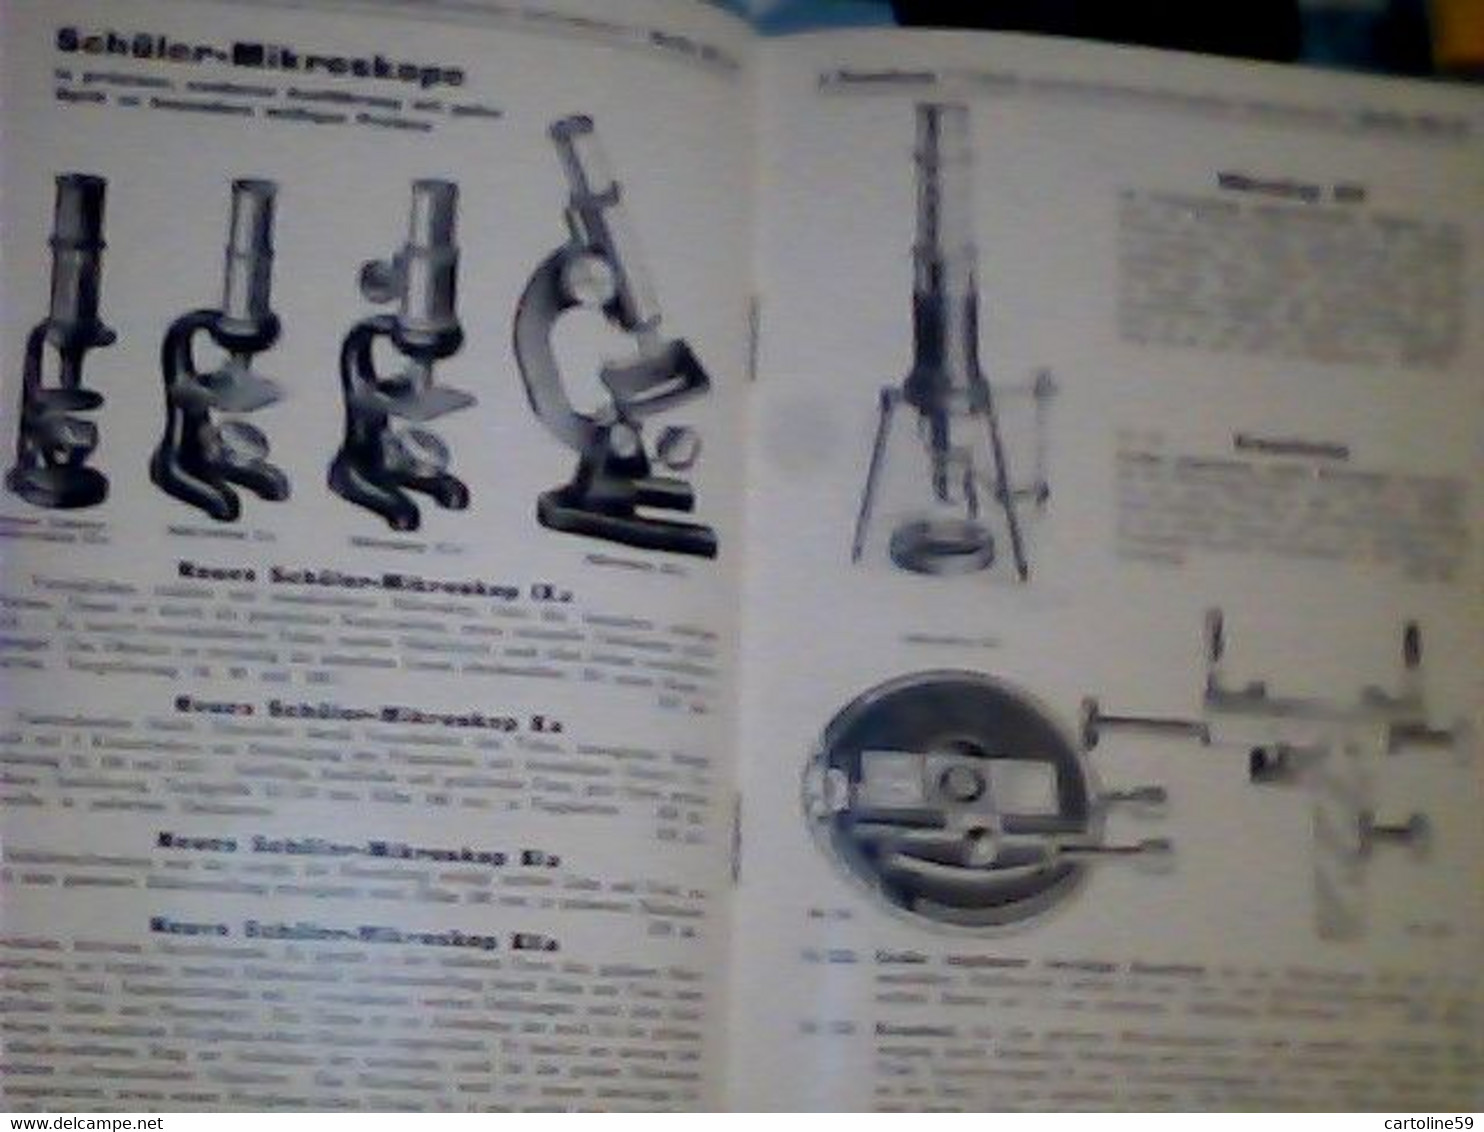 LIBRETTO MICROSCOPIO ROSENBAUM BERLIN FABRIK OPTISCH MIKROSKOP PREISLISTELETTER 1932 IQ8312 - Catalogi